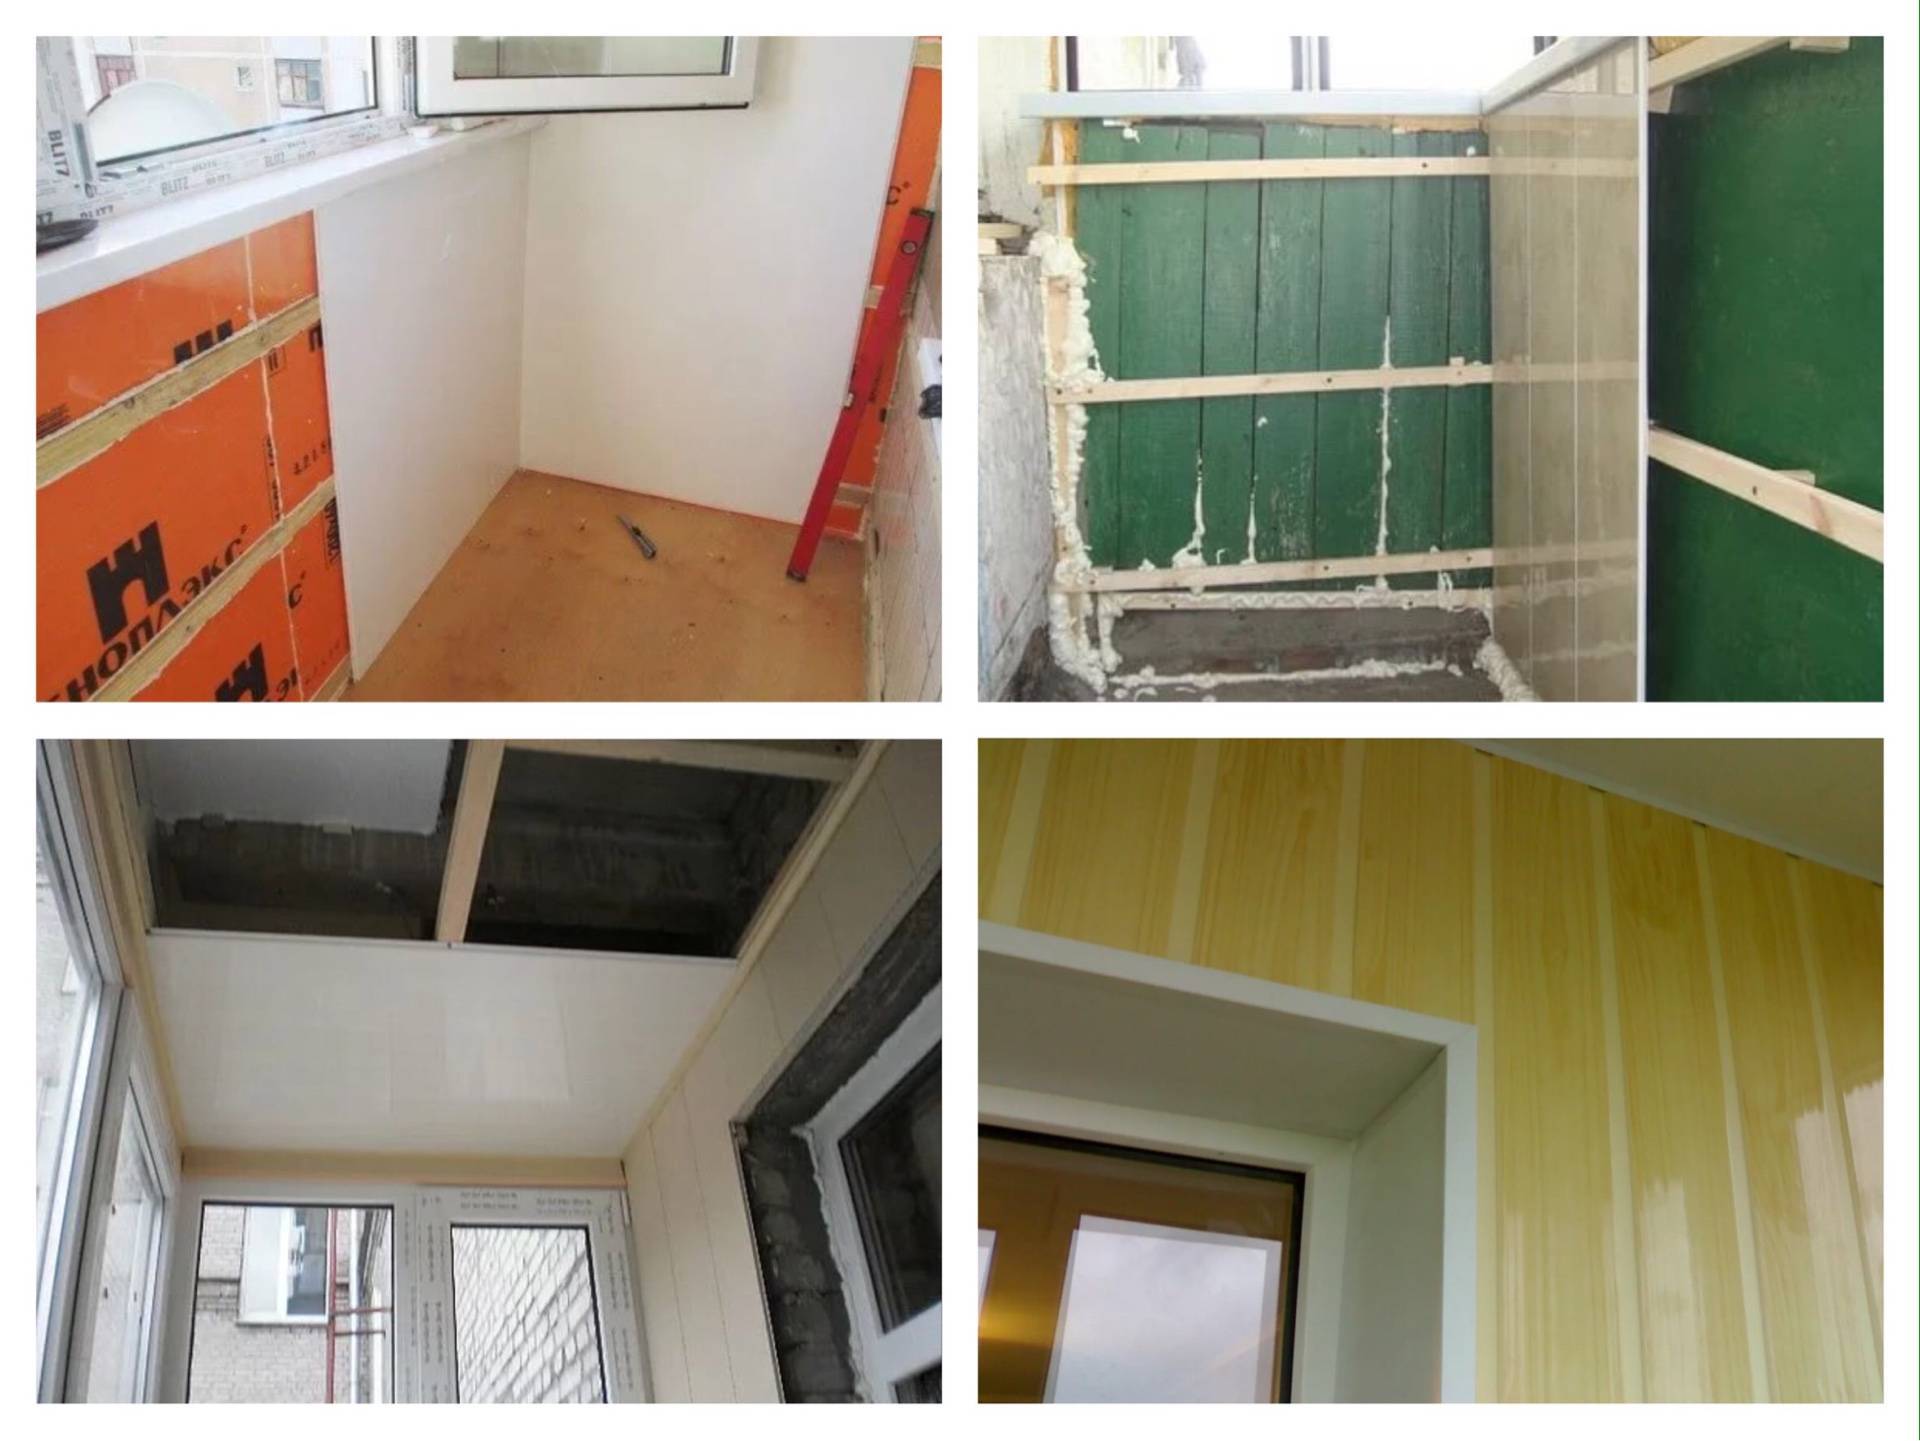 ???? как крепить пвх панели к стене и потолку: особенности, подготовка, материалы